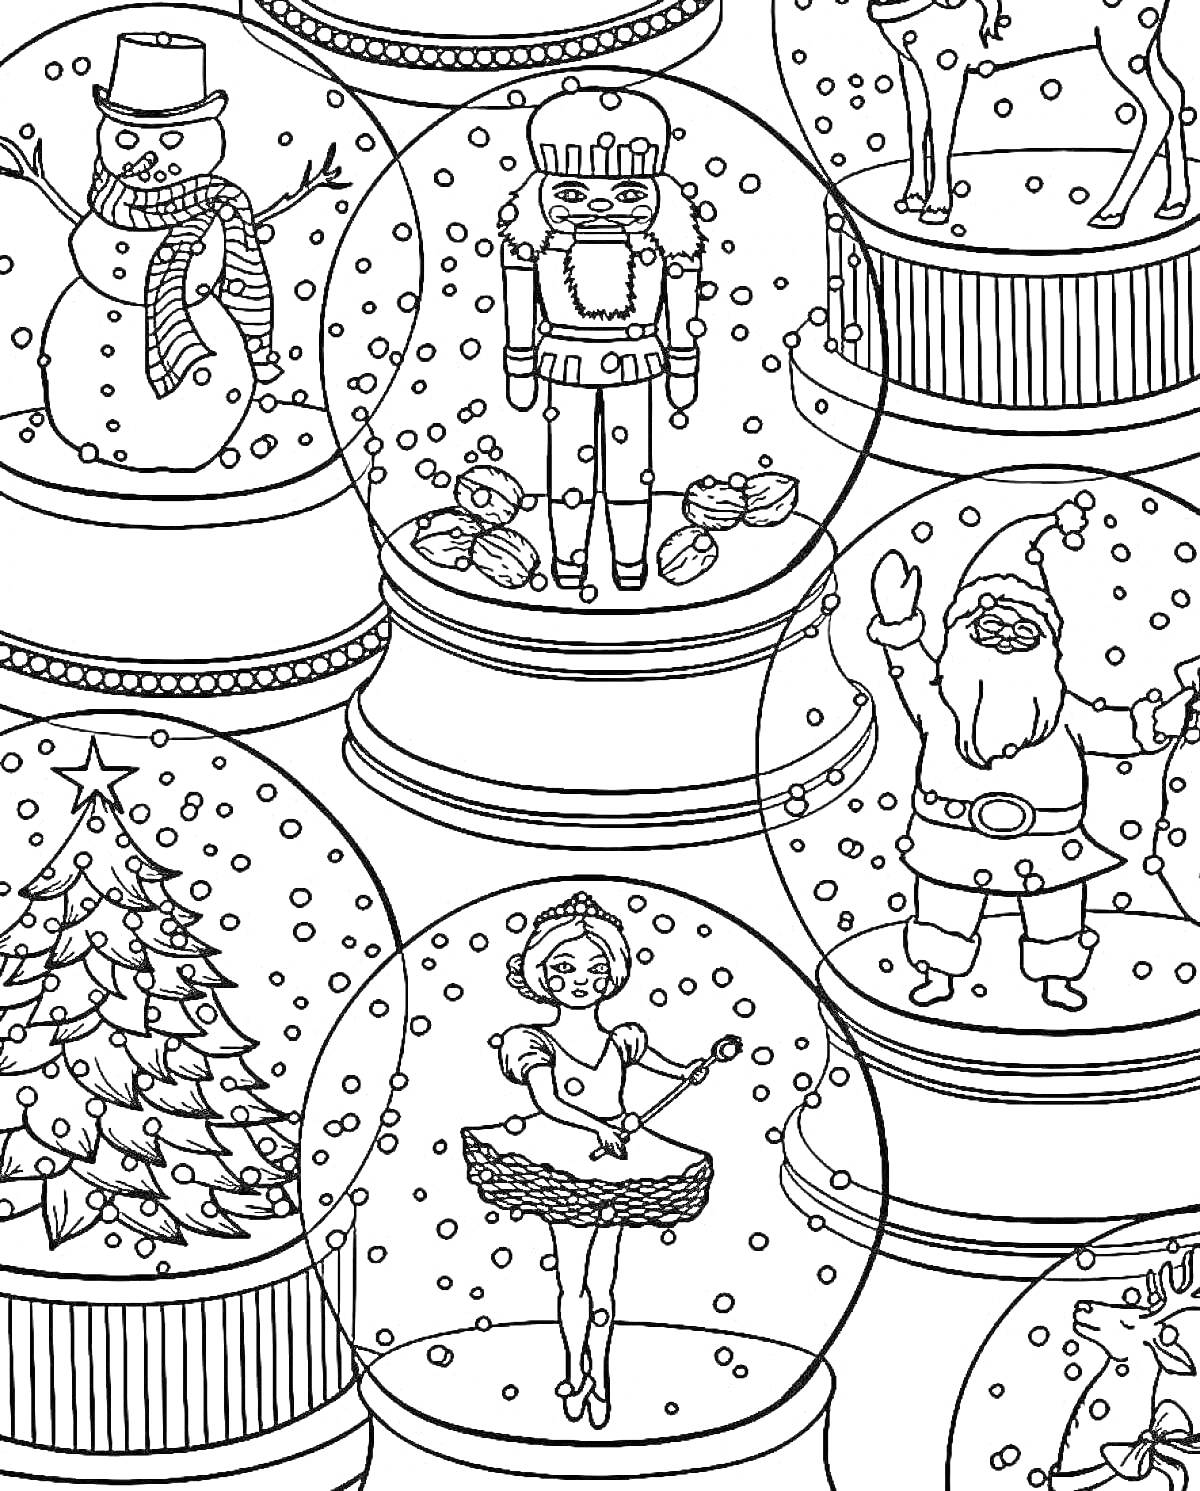 Раскраска Снежные шары с рождественскими персонажами - снеговик, щелкунчик, северный олень, Санта-Клаус, новогодняя елка, балерина